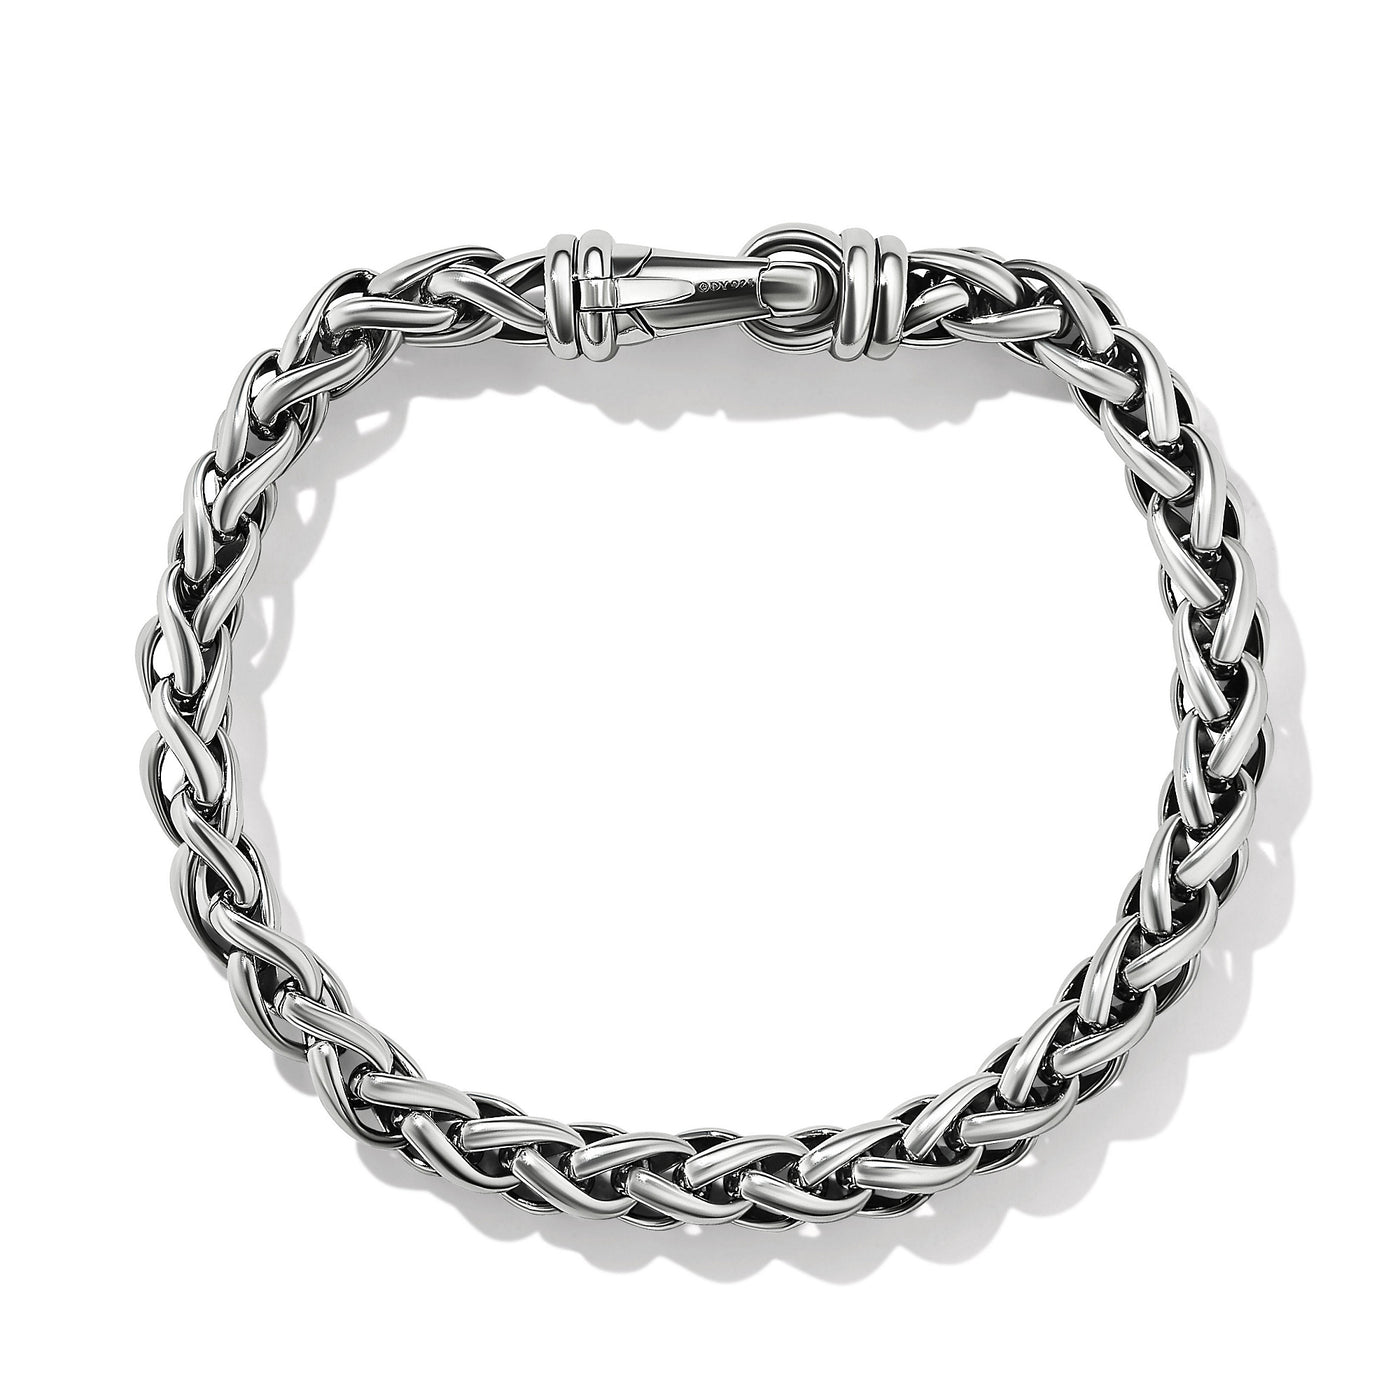 Wheat Chain Bracelet in Sterling Silver\, 6mm